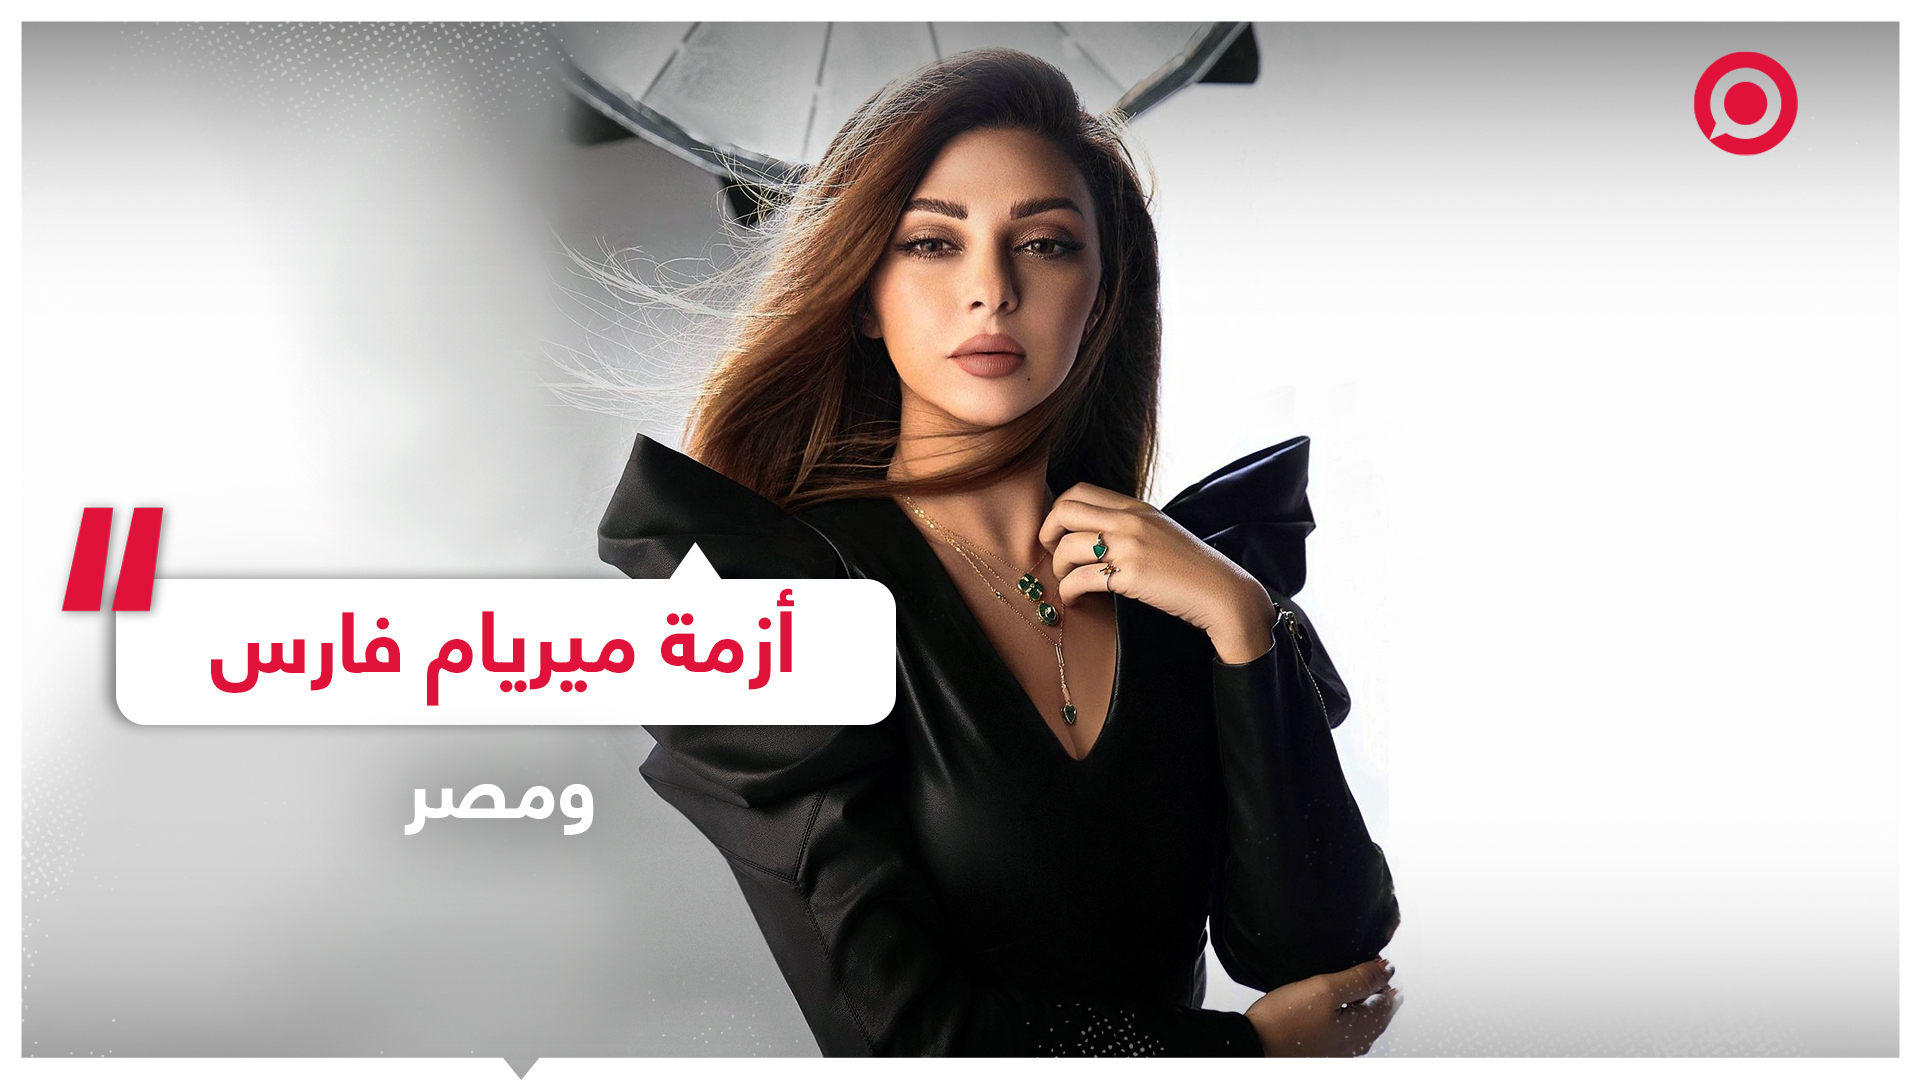 حملة مصرية ضد المغنية اللبنانية ميريام فارس